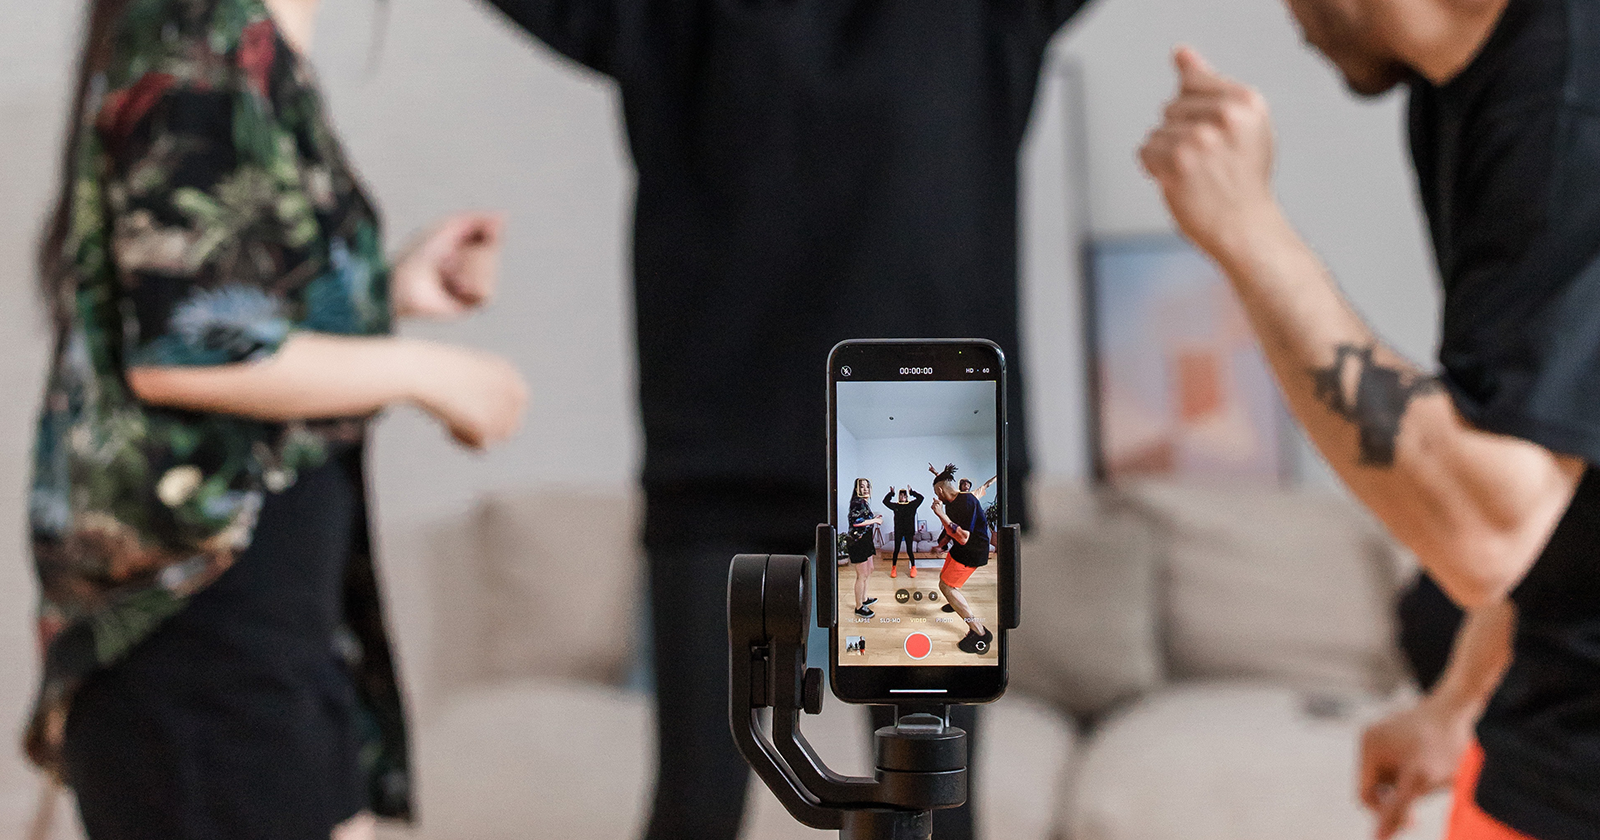 Mensen die de kracht van TikTok ervaren door een dansje op te nemen in hun woonkamer met hun smartphone op een statief. Illustratie van de creativiteit en impact van TikTok op sociale expressie.